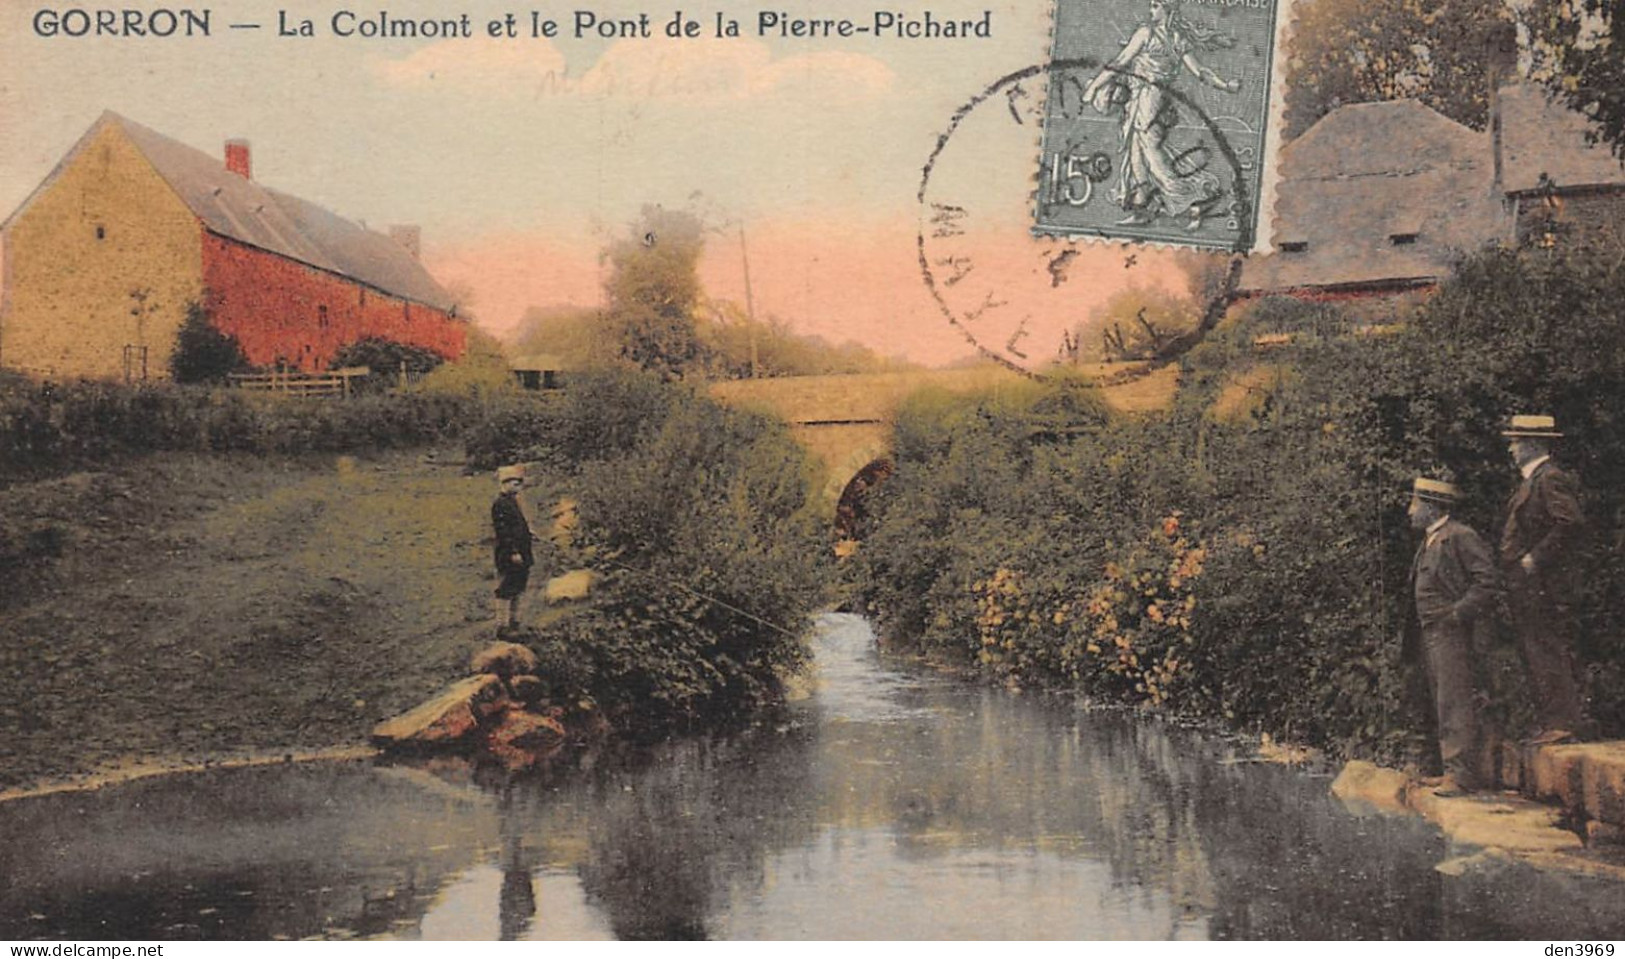 GORRON (Mayenne) - La Colmont Et Le Pont De La Pierre Pichard - Voyagé 1924 (2 Scans) Wager, 9 Rue Gobert à Clichy/Seine - Gorron